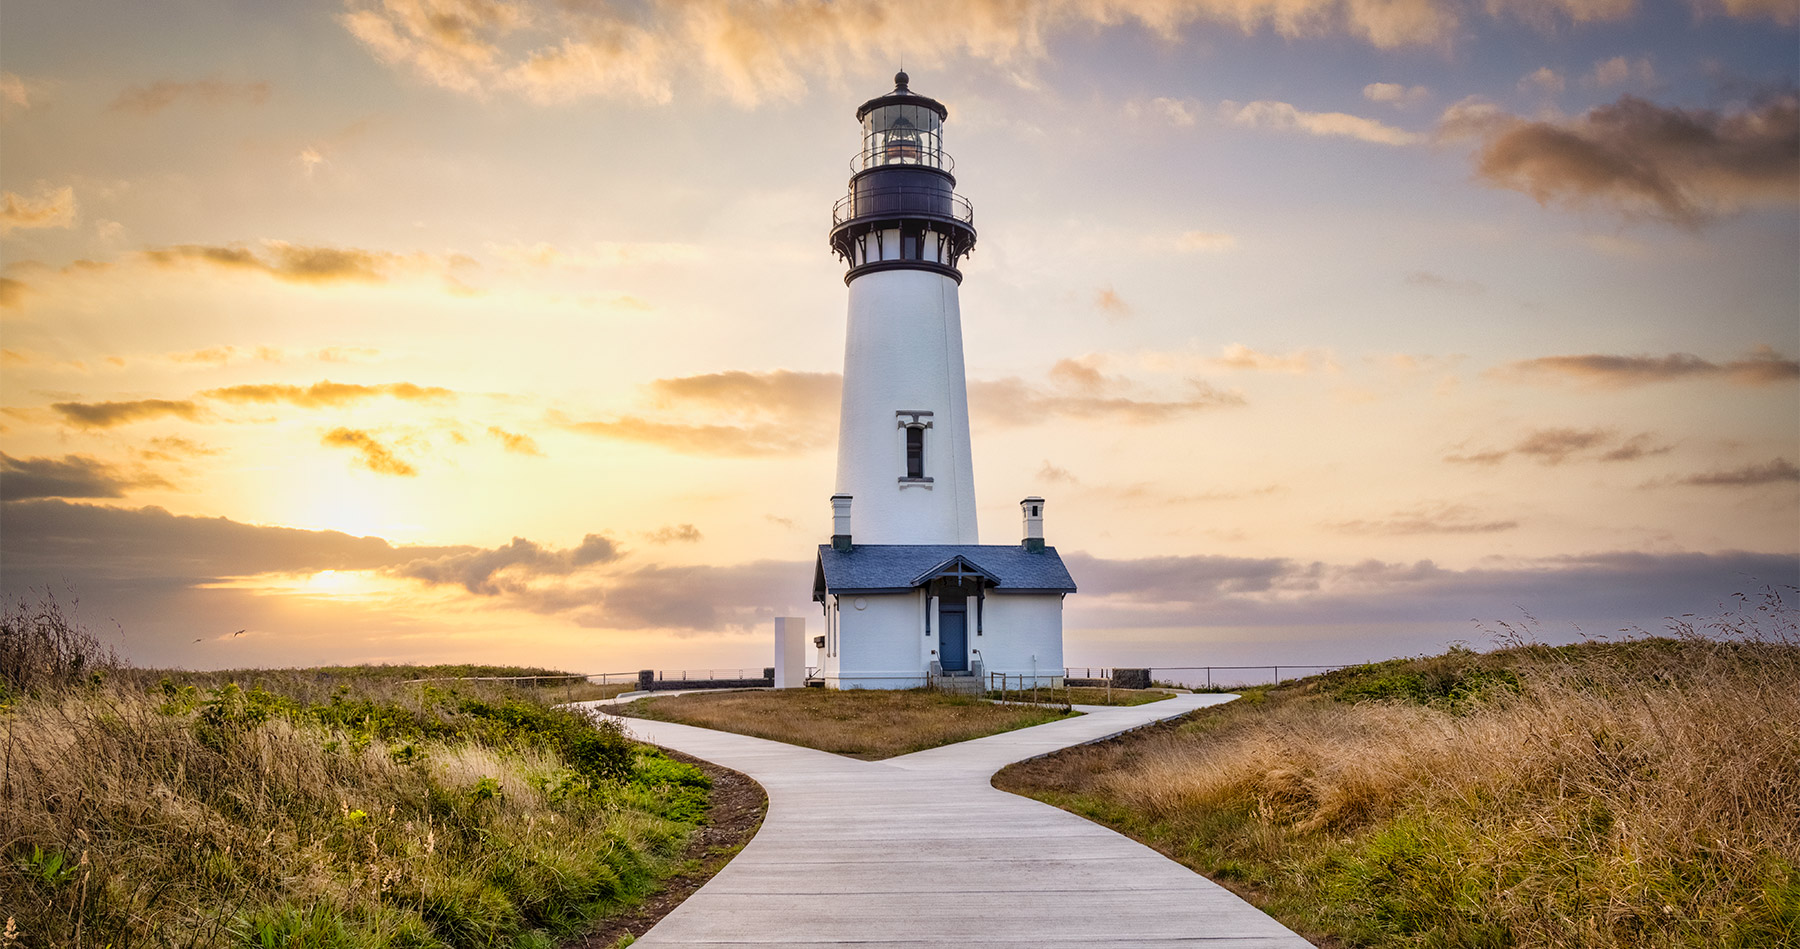 Yaquina Head Lighthouse on the coast of Oregon